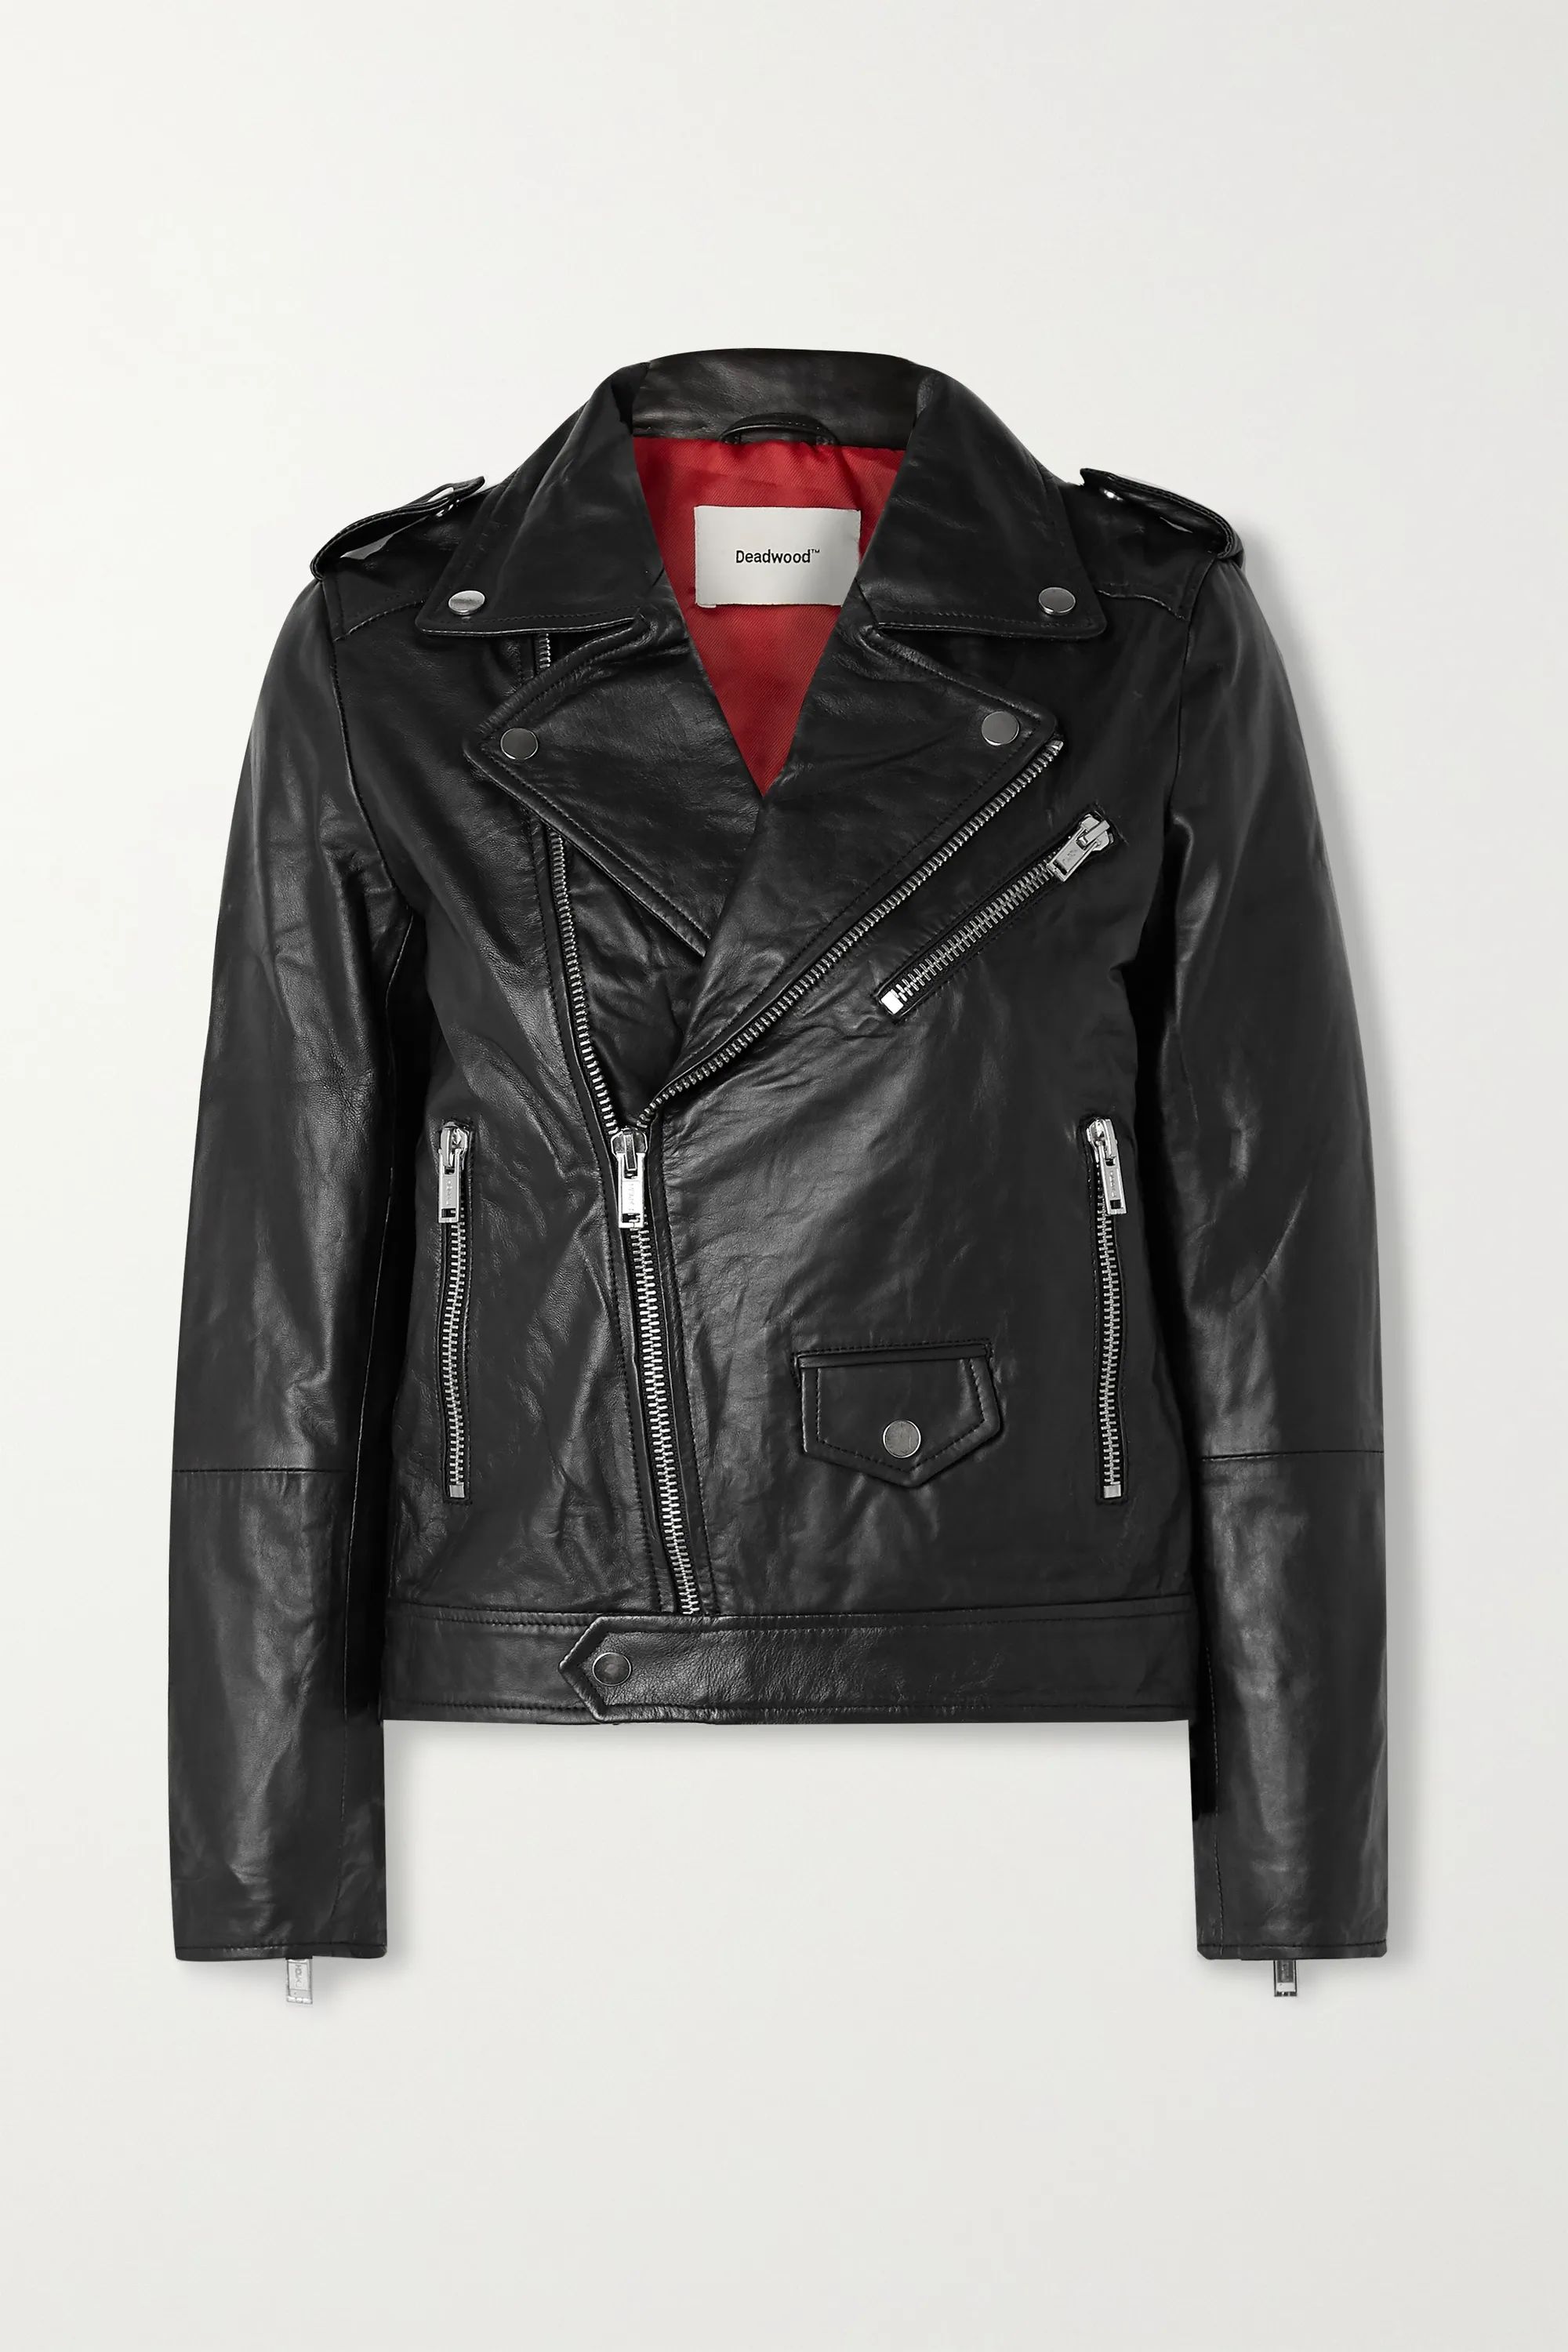 Black + NET SUSTAIN River leather biker jacket | Deadwood | NET-A-PORTER | NET-A-PORTER (US)